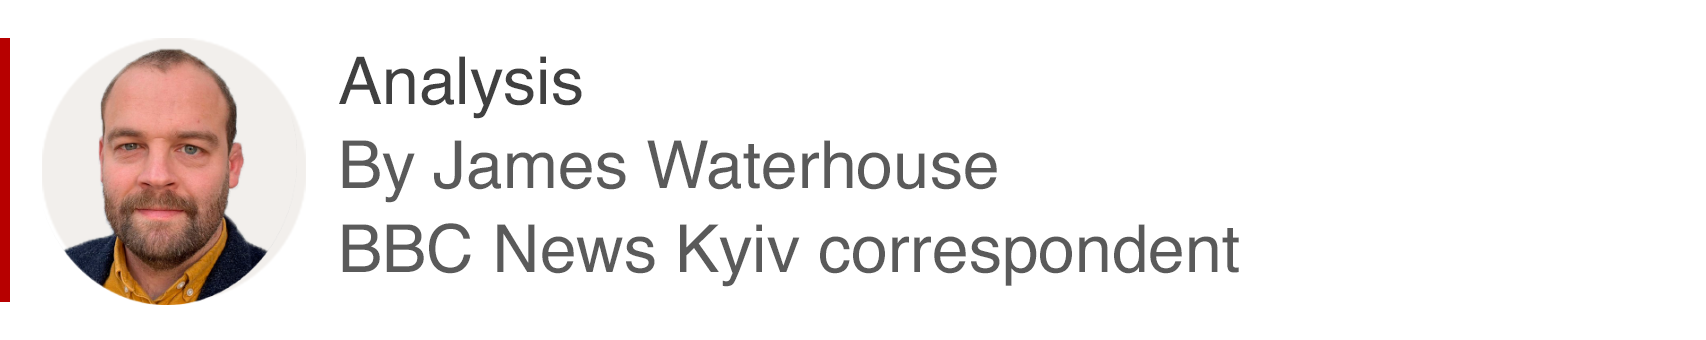 Caixa de análise de James Waterhouse, correspondente da BBC News Kyiv